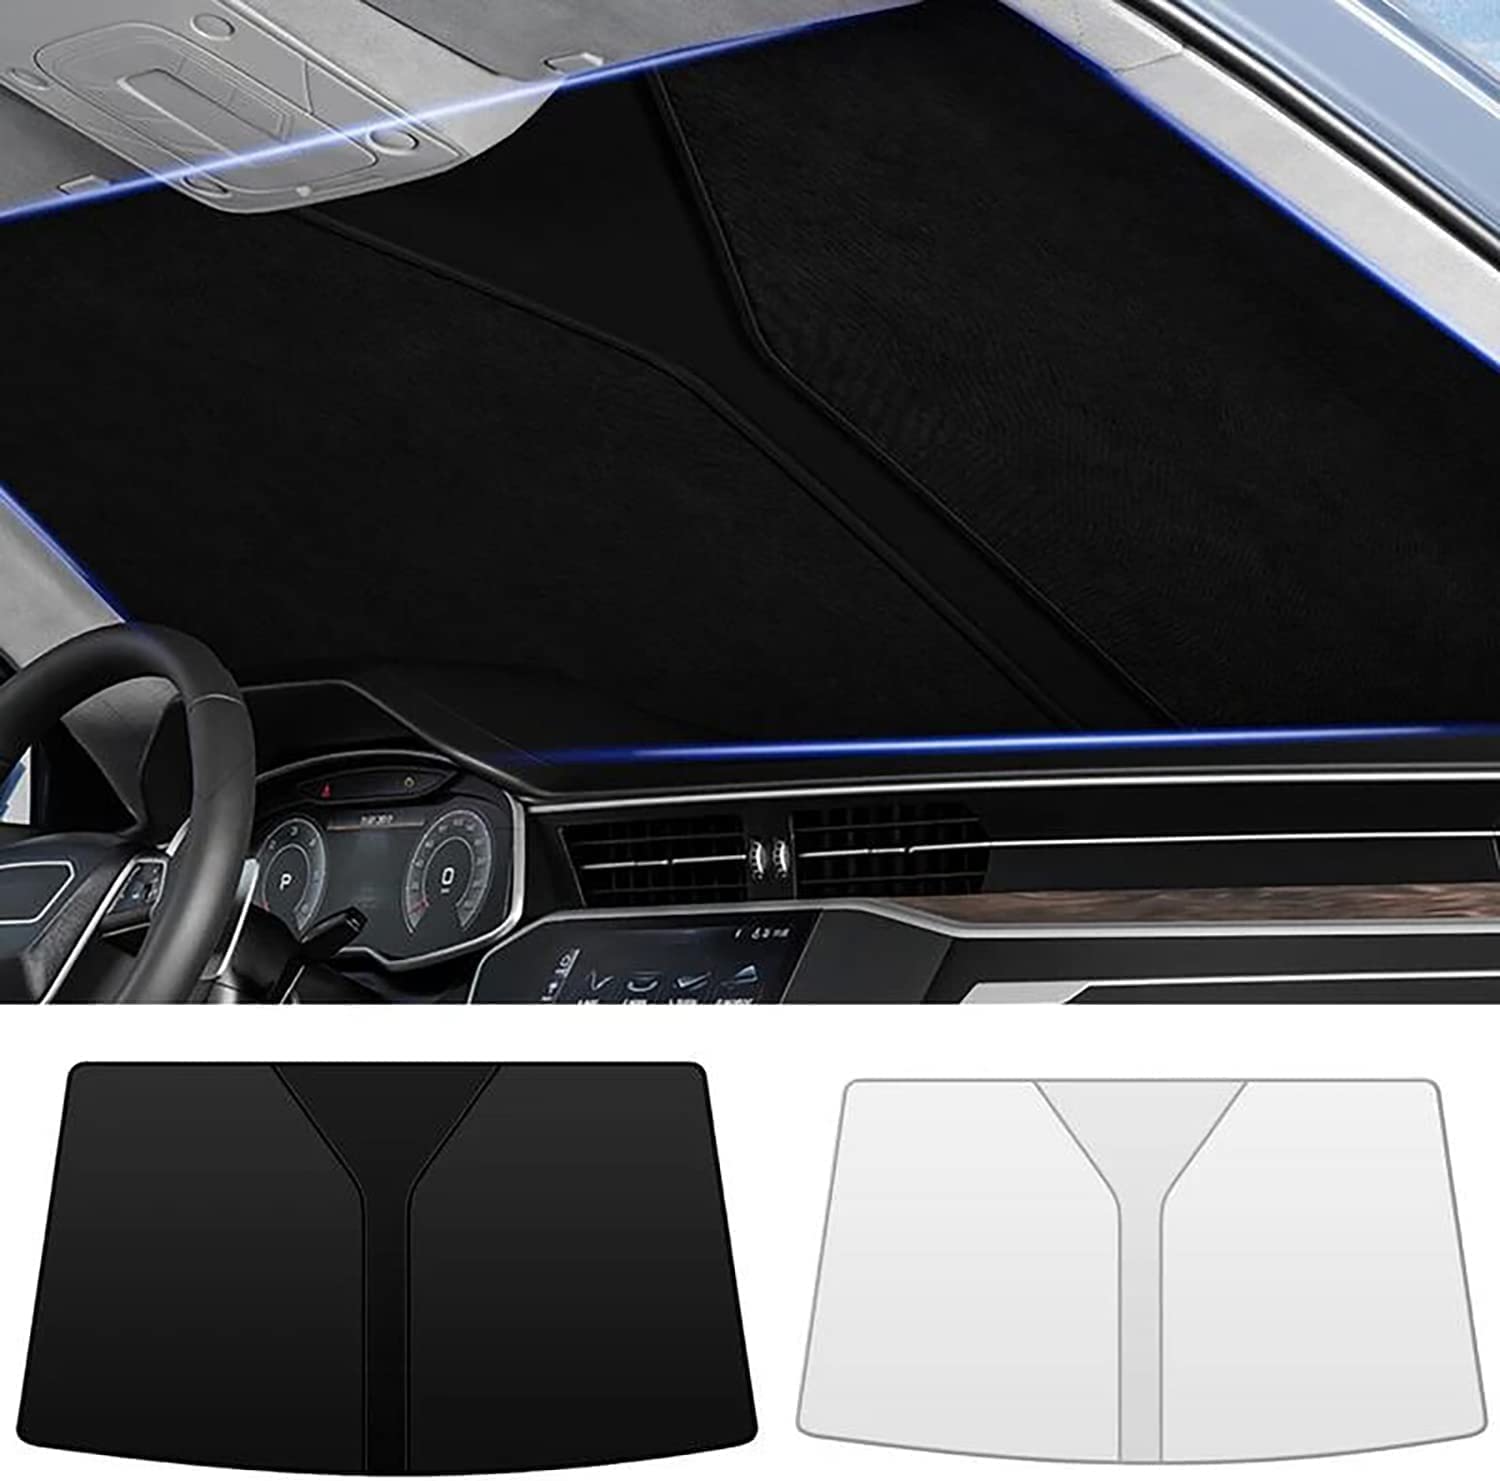 Auto-Sonnenschutz für Die Windschutzscheibe für VW Polo AW GTI 2017-2022 2023, Blockiert UV-Strahlen, Sonnenblendenschutz, Einfach zu Falten und zu Verstauen,Black von INTCHE